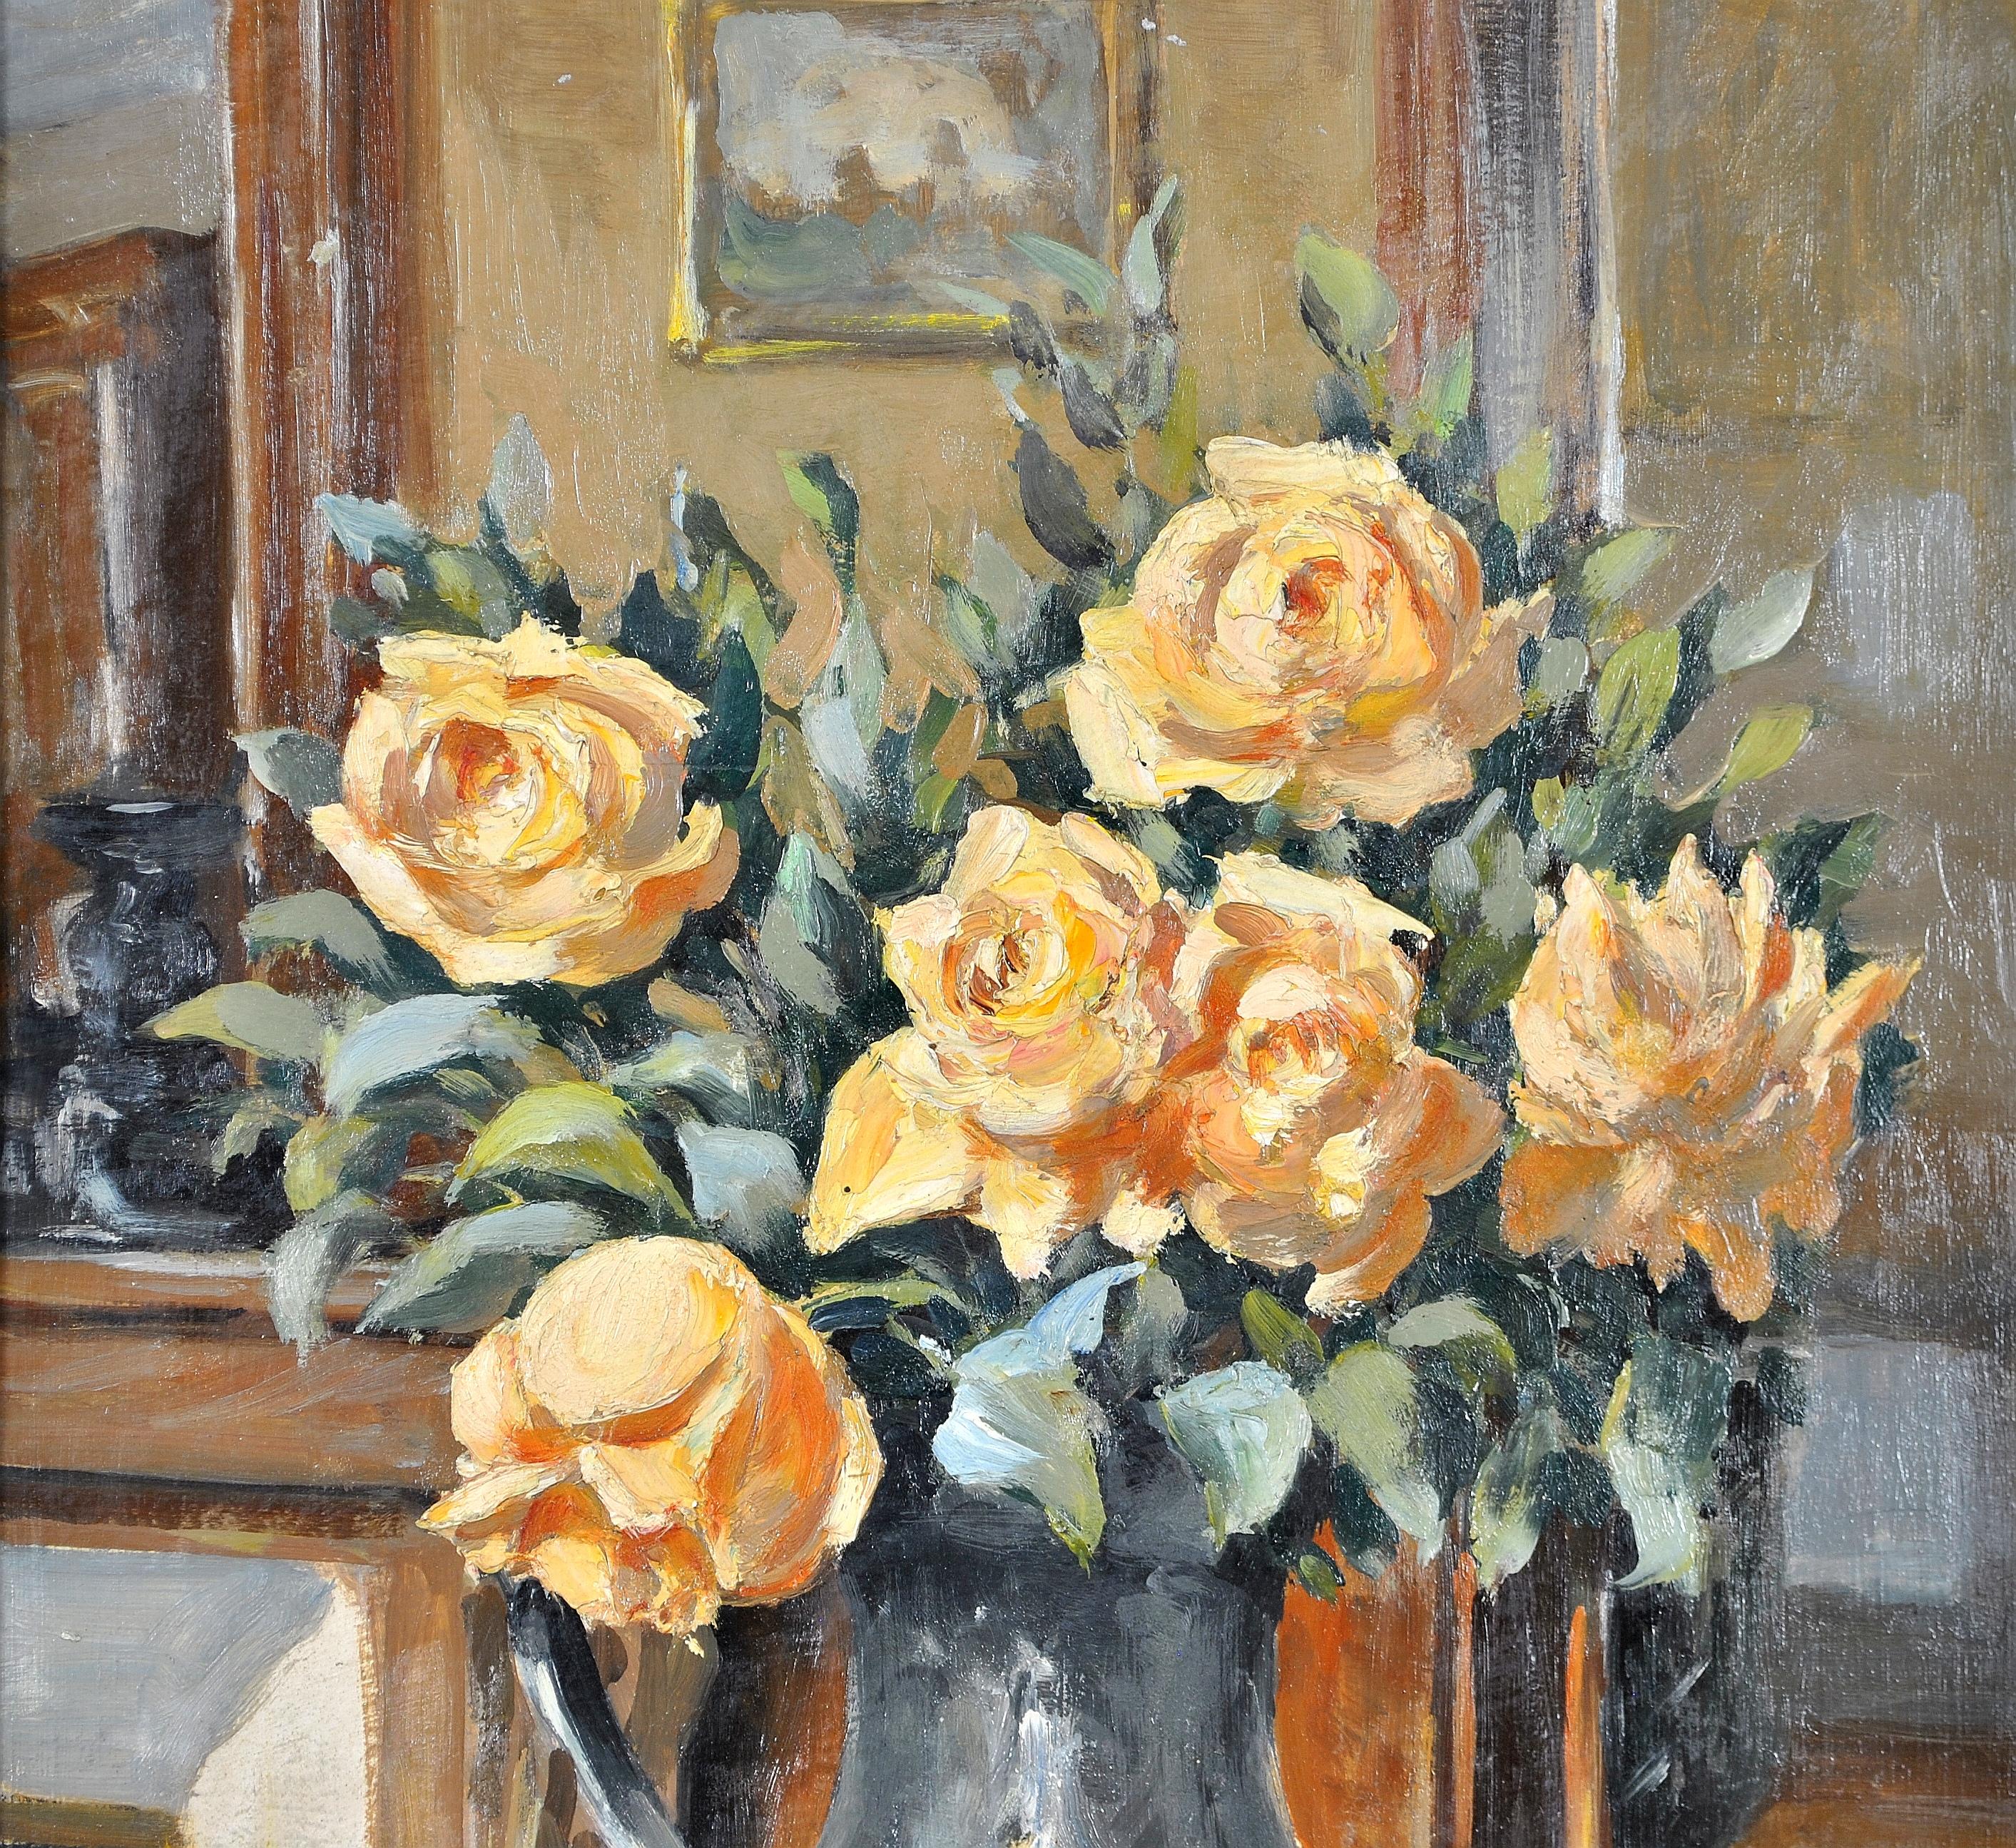 Ein schönes französisches impressionistisches Öl-auf-Karton-Interieur-Stillleben aus den 1920er Jahren mit gelben Rosen in einem Krug. Ausgezeichnete Qualitätsarbeit mit vielen Details, darunter ein Gemälde an der Wand und ein Spiegel über dem